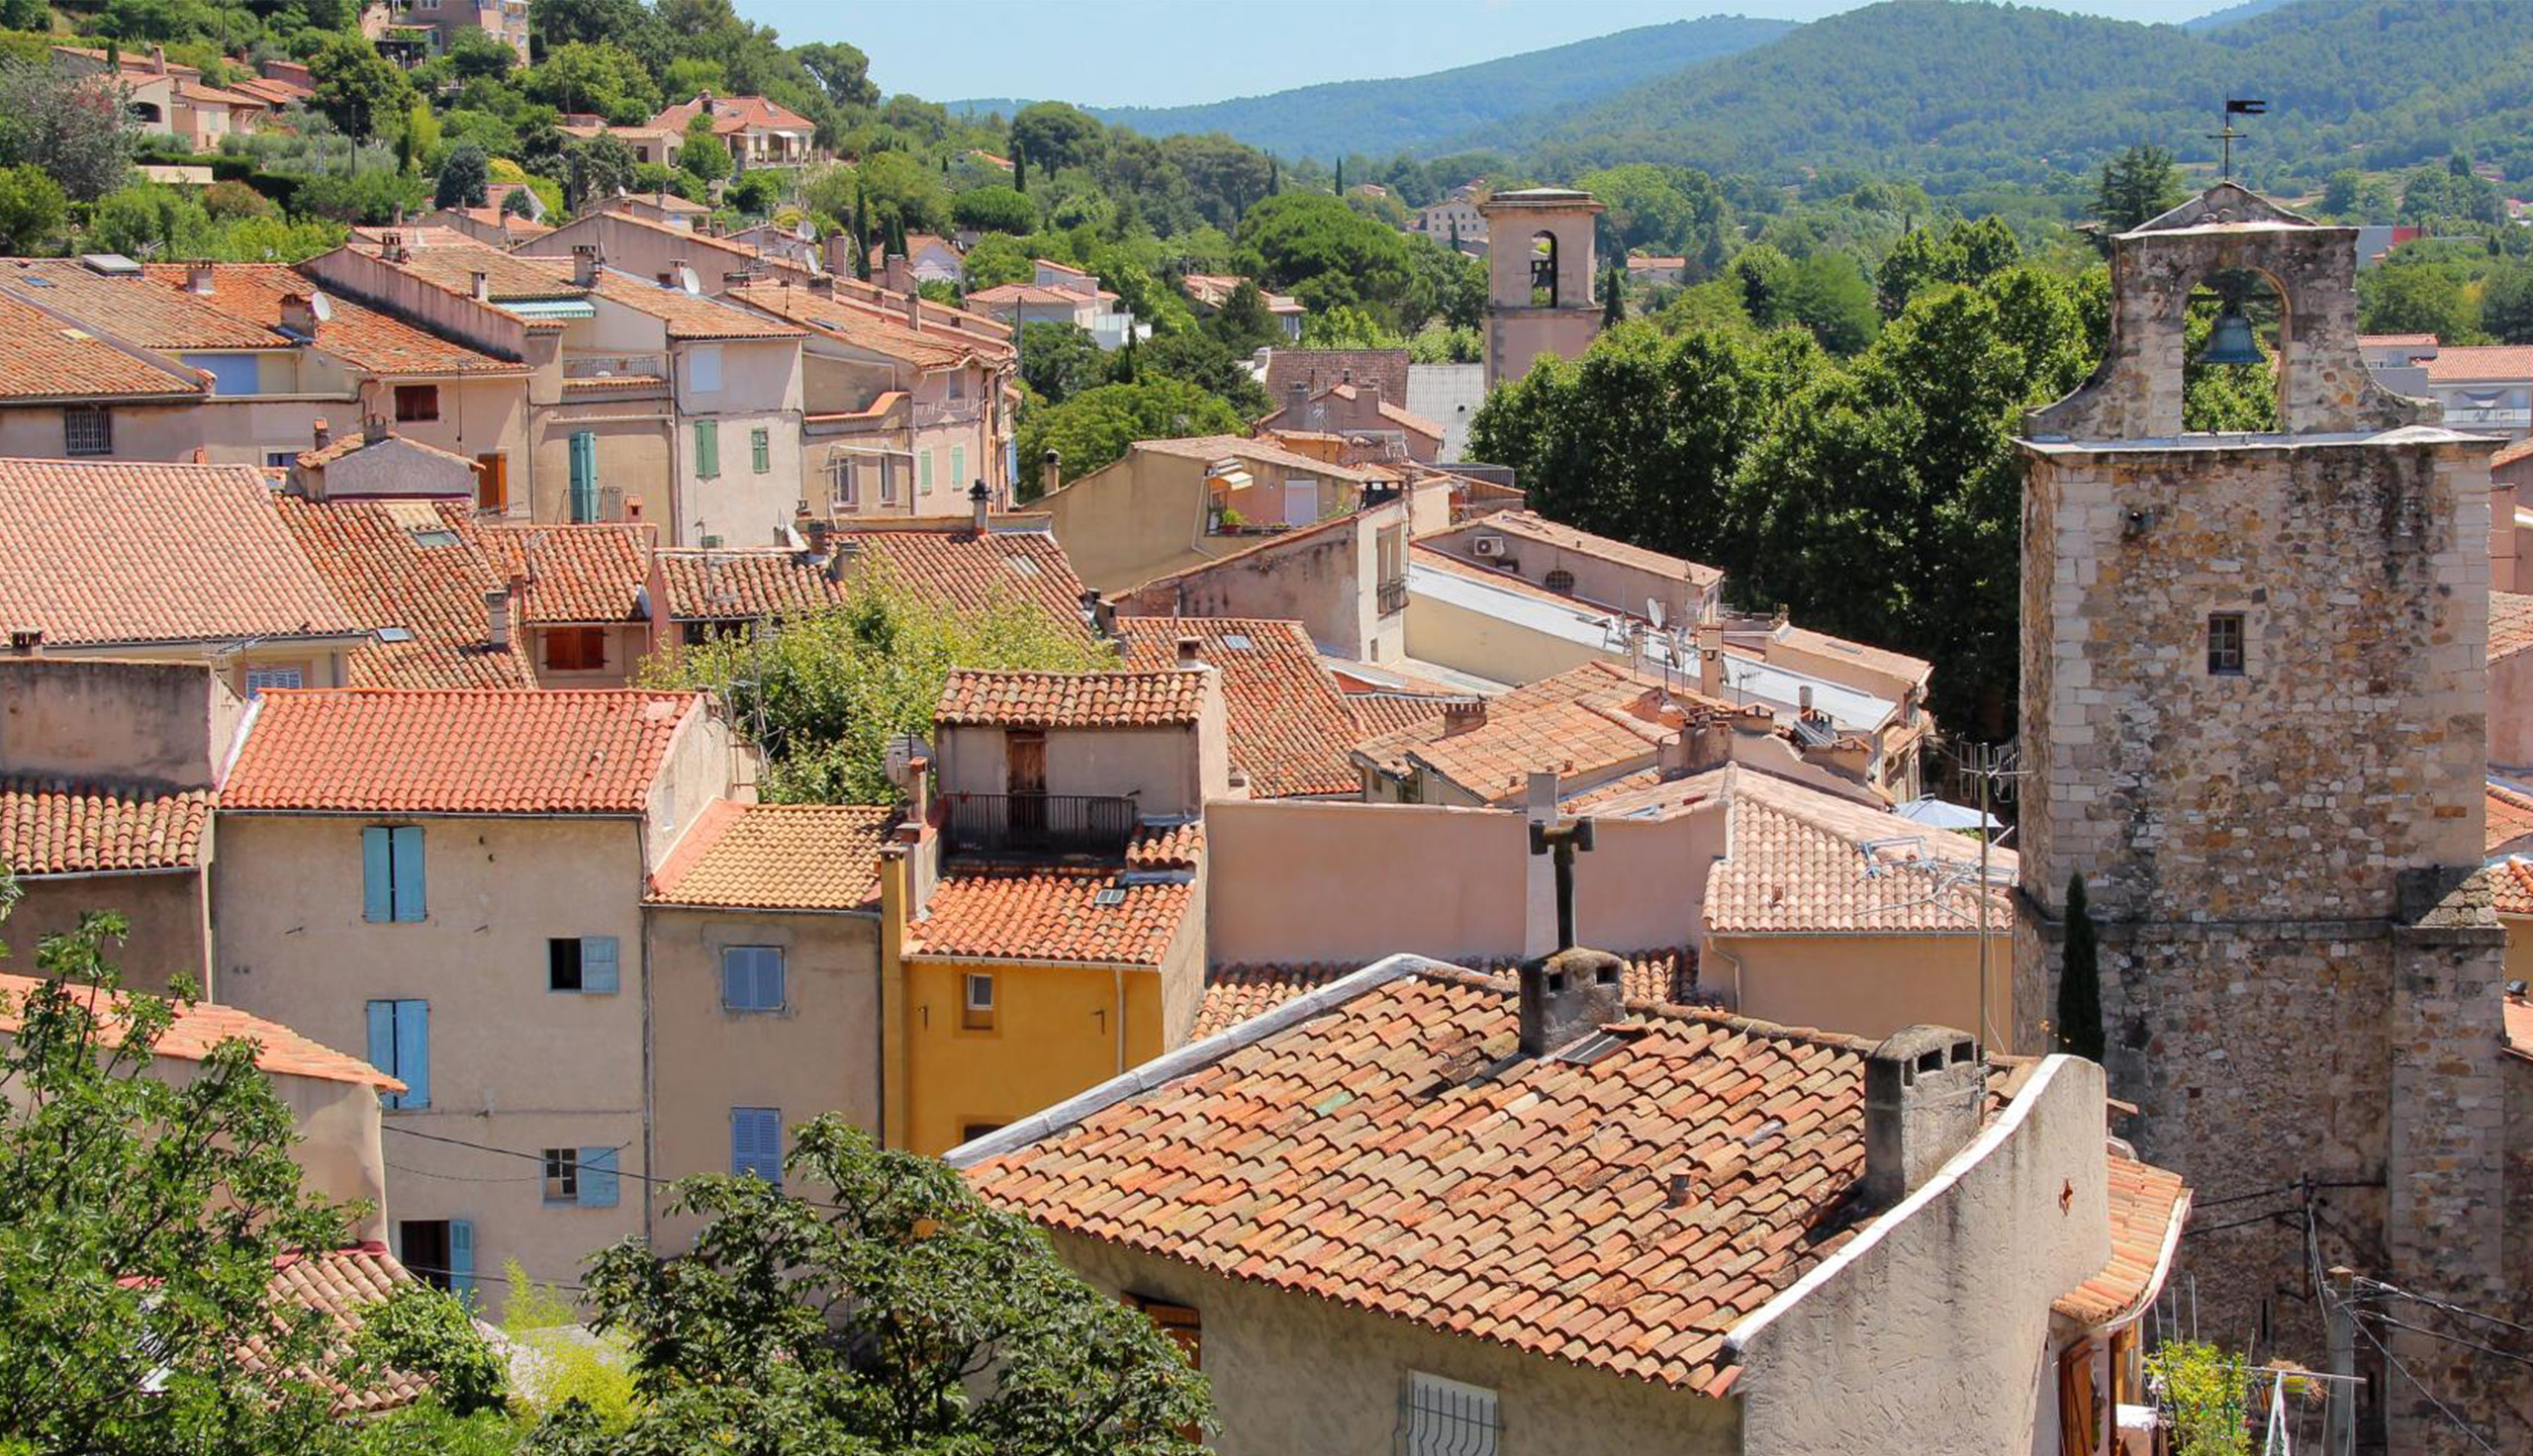  "Auriol", "commune d'Auriol", "village provençal", "patrimoine d'Auriol", "randonnée à Auriol".